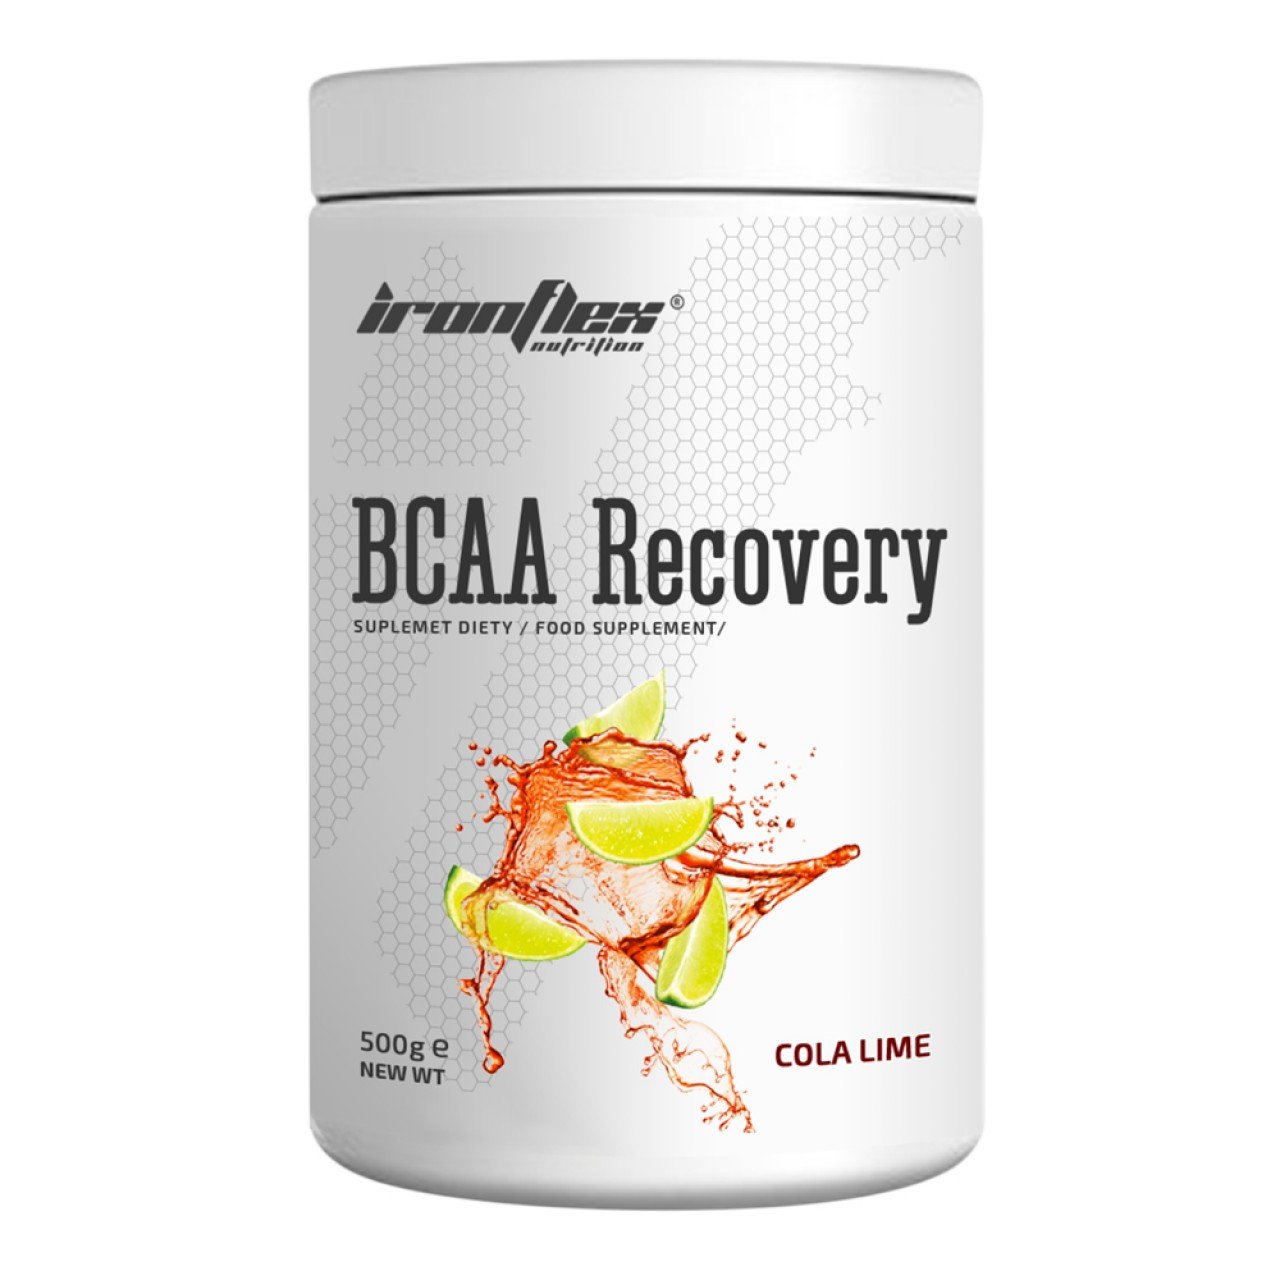 БЦАА Iron Flex BCAA Recovery 500 грамм Кола лайм,  мл, IronFlex. BCAA. Снижение веса Восстановление Антикатаболические свойства Сухая мышечная масса 